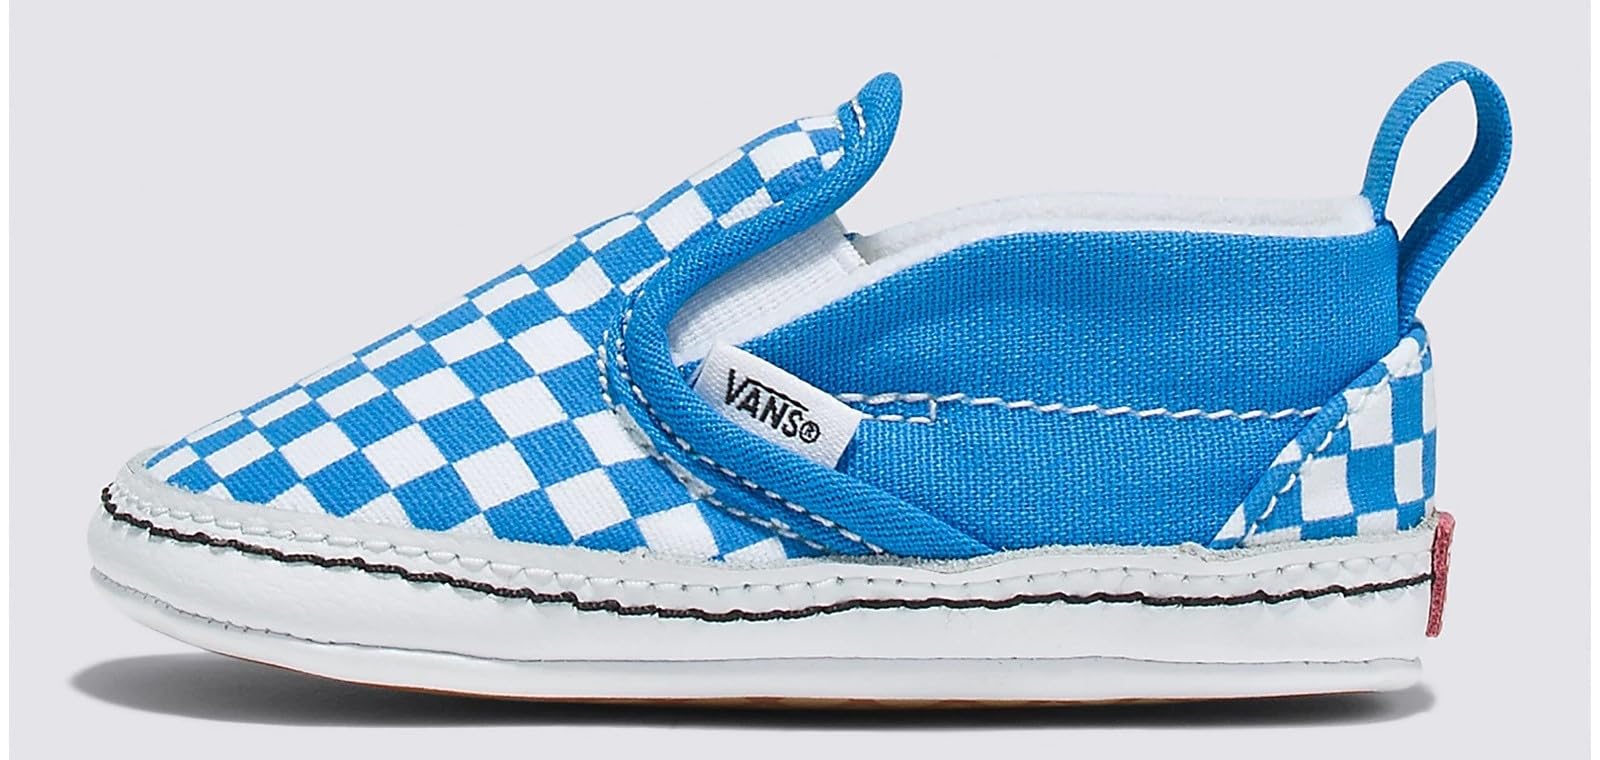 Vans Infant Slip-On V Crib Sneakers (Brilliant Blue/True White, 3)